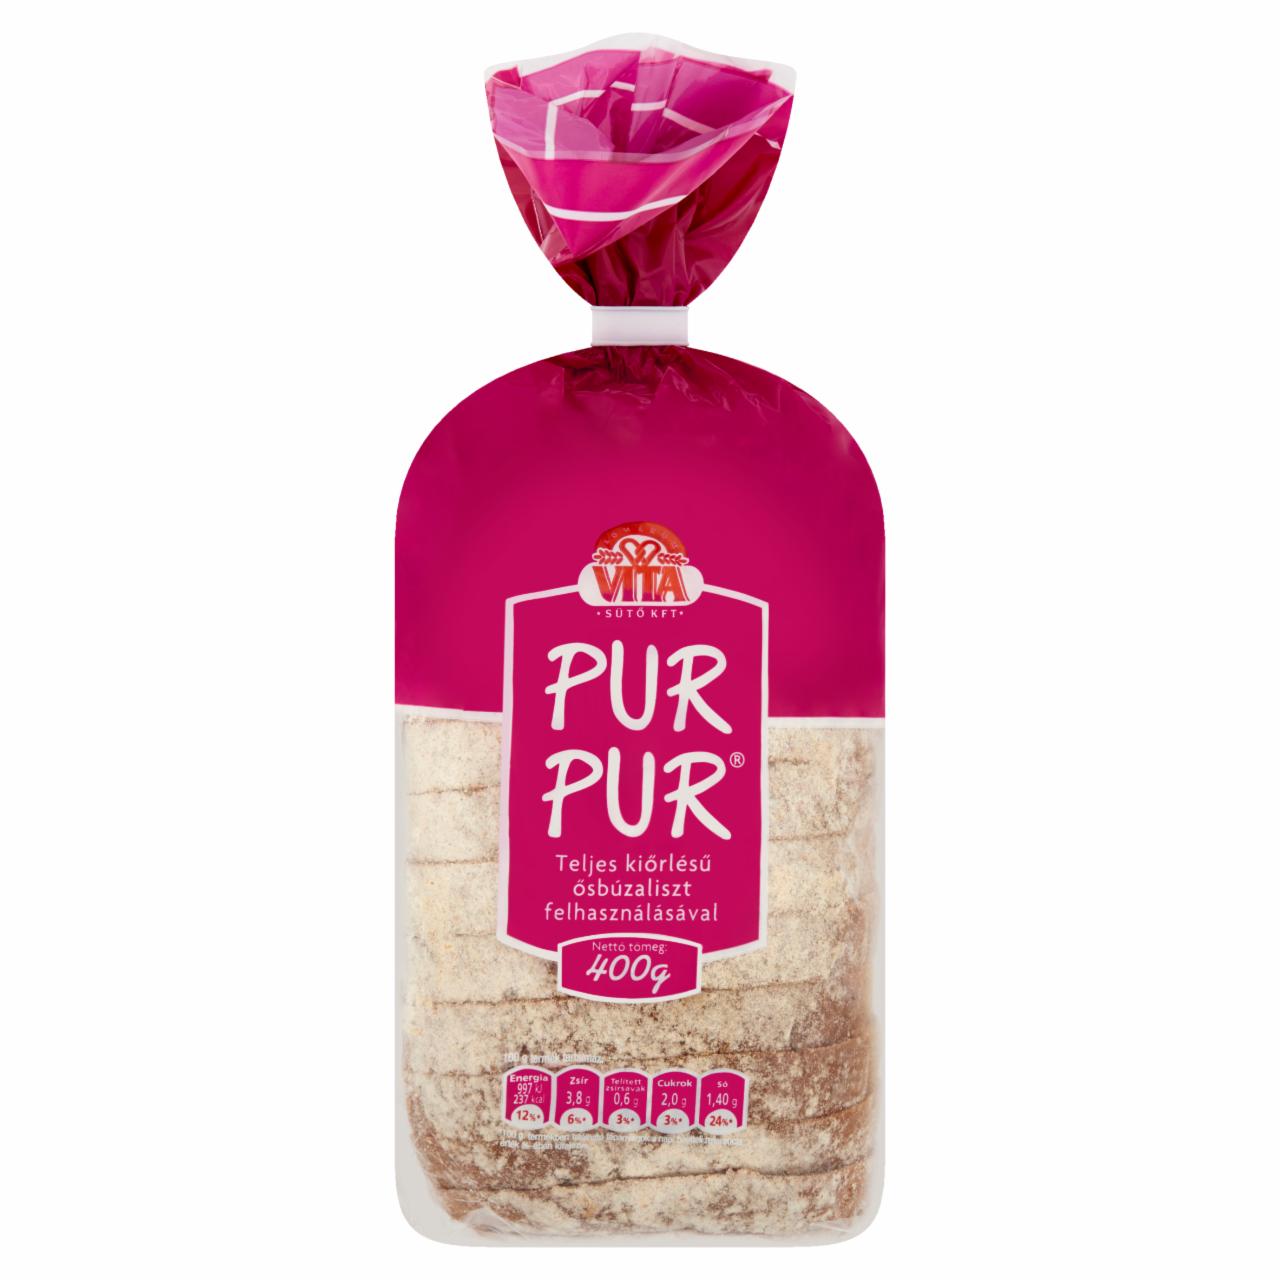 Képek - PurPur kenyér teljes kiőrlésű ősbúzából Vita